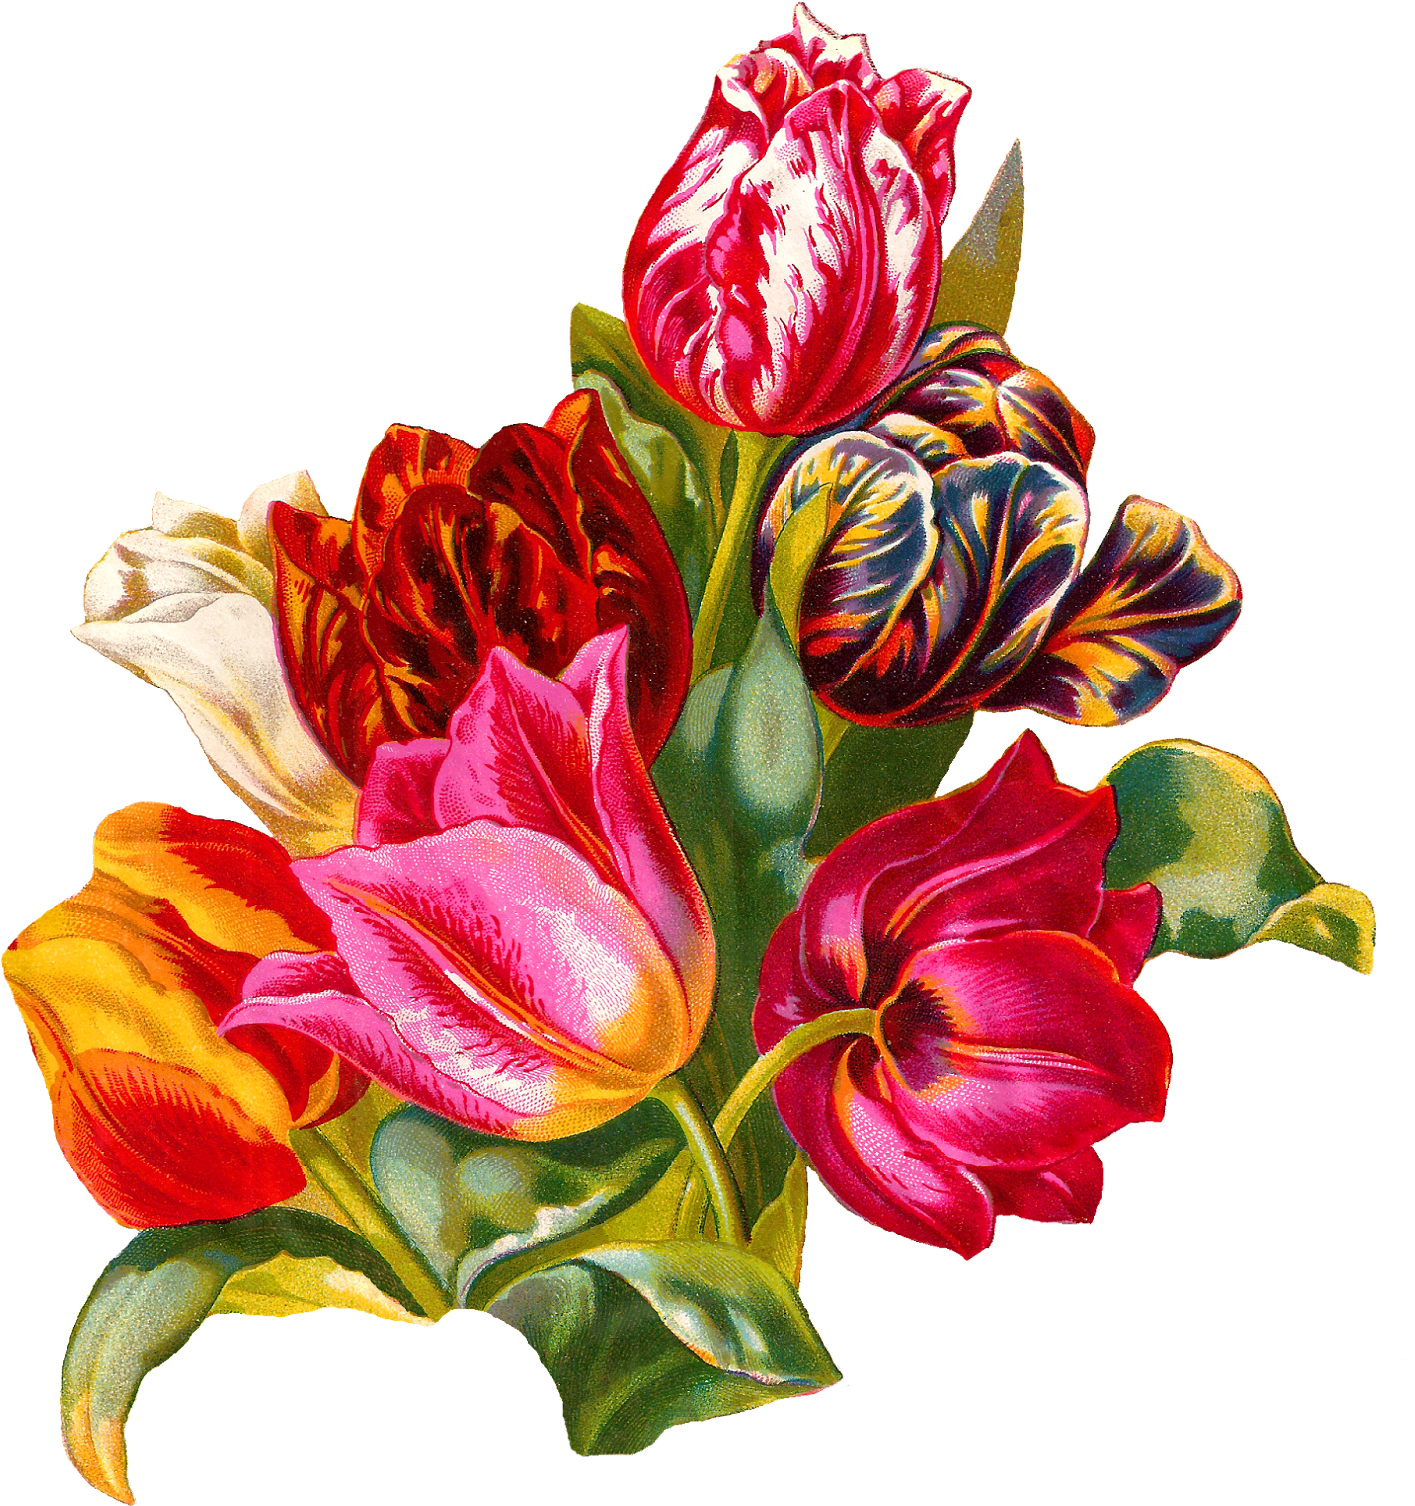 Antique Images Botanical Artwork Flower Digital Illustration - Itg Studios (1498x1600), Png Download